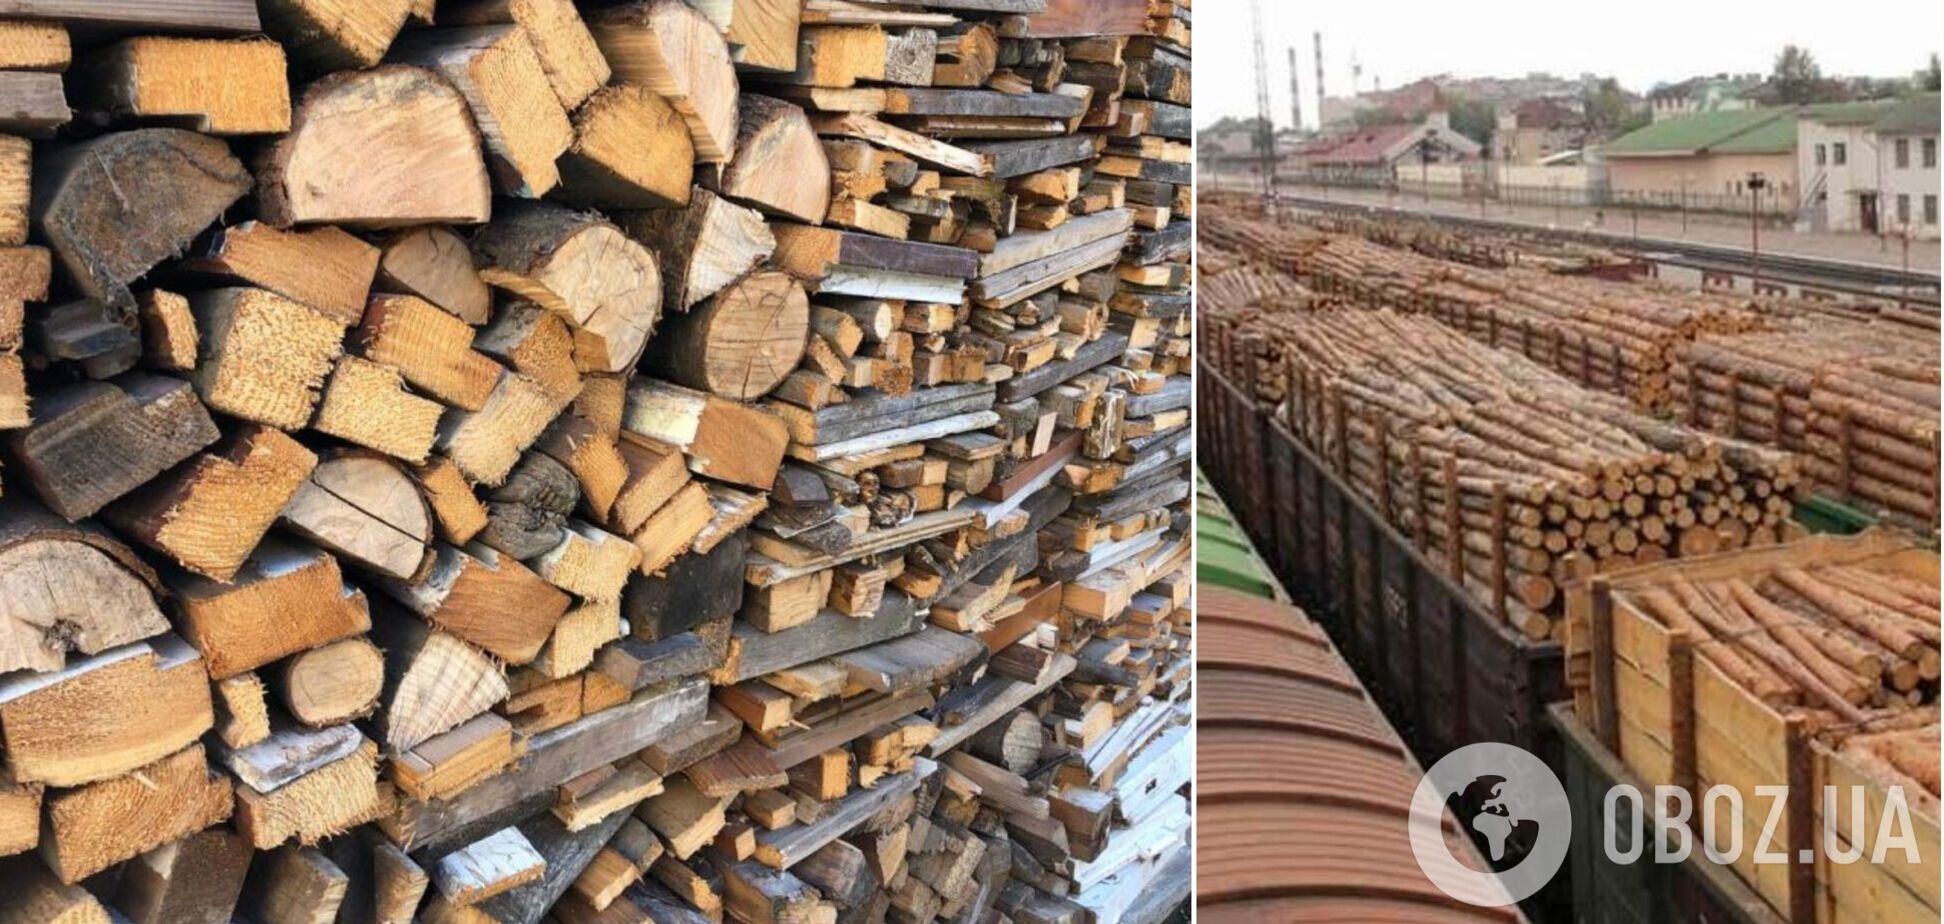 Украинцам бесплатно раздадут дрова